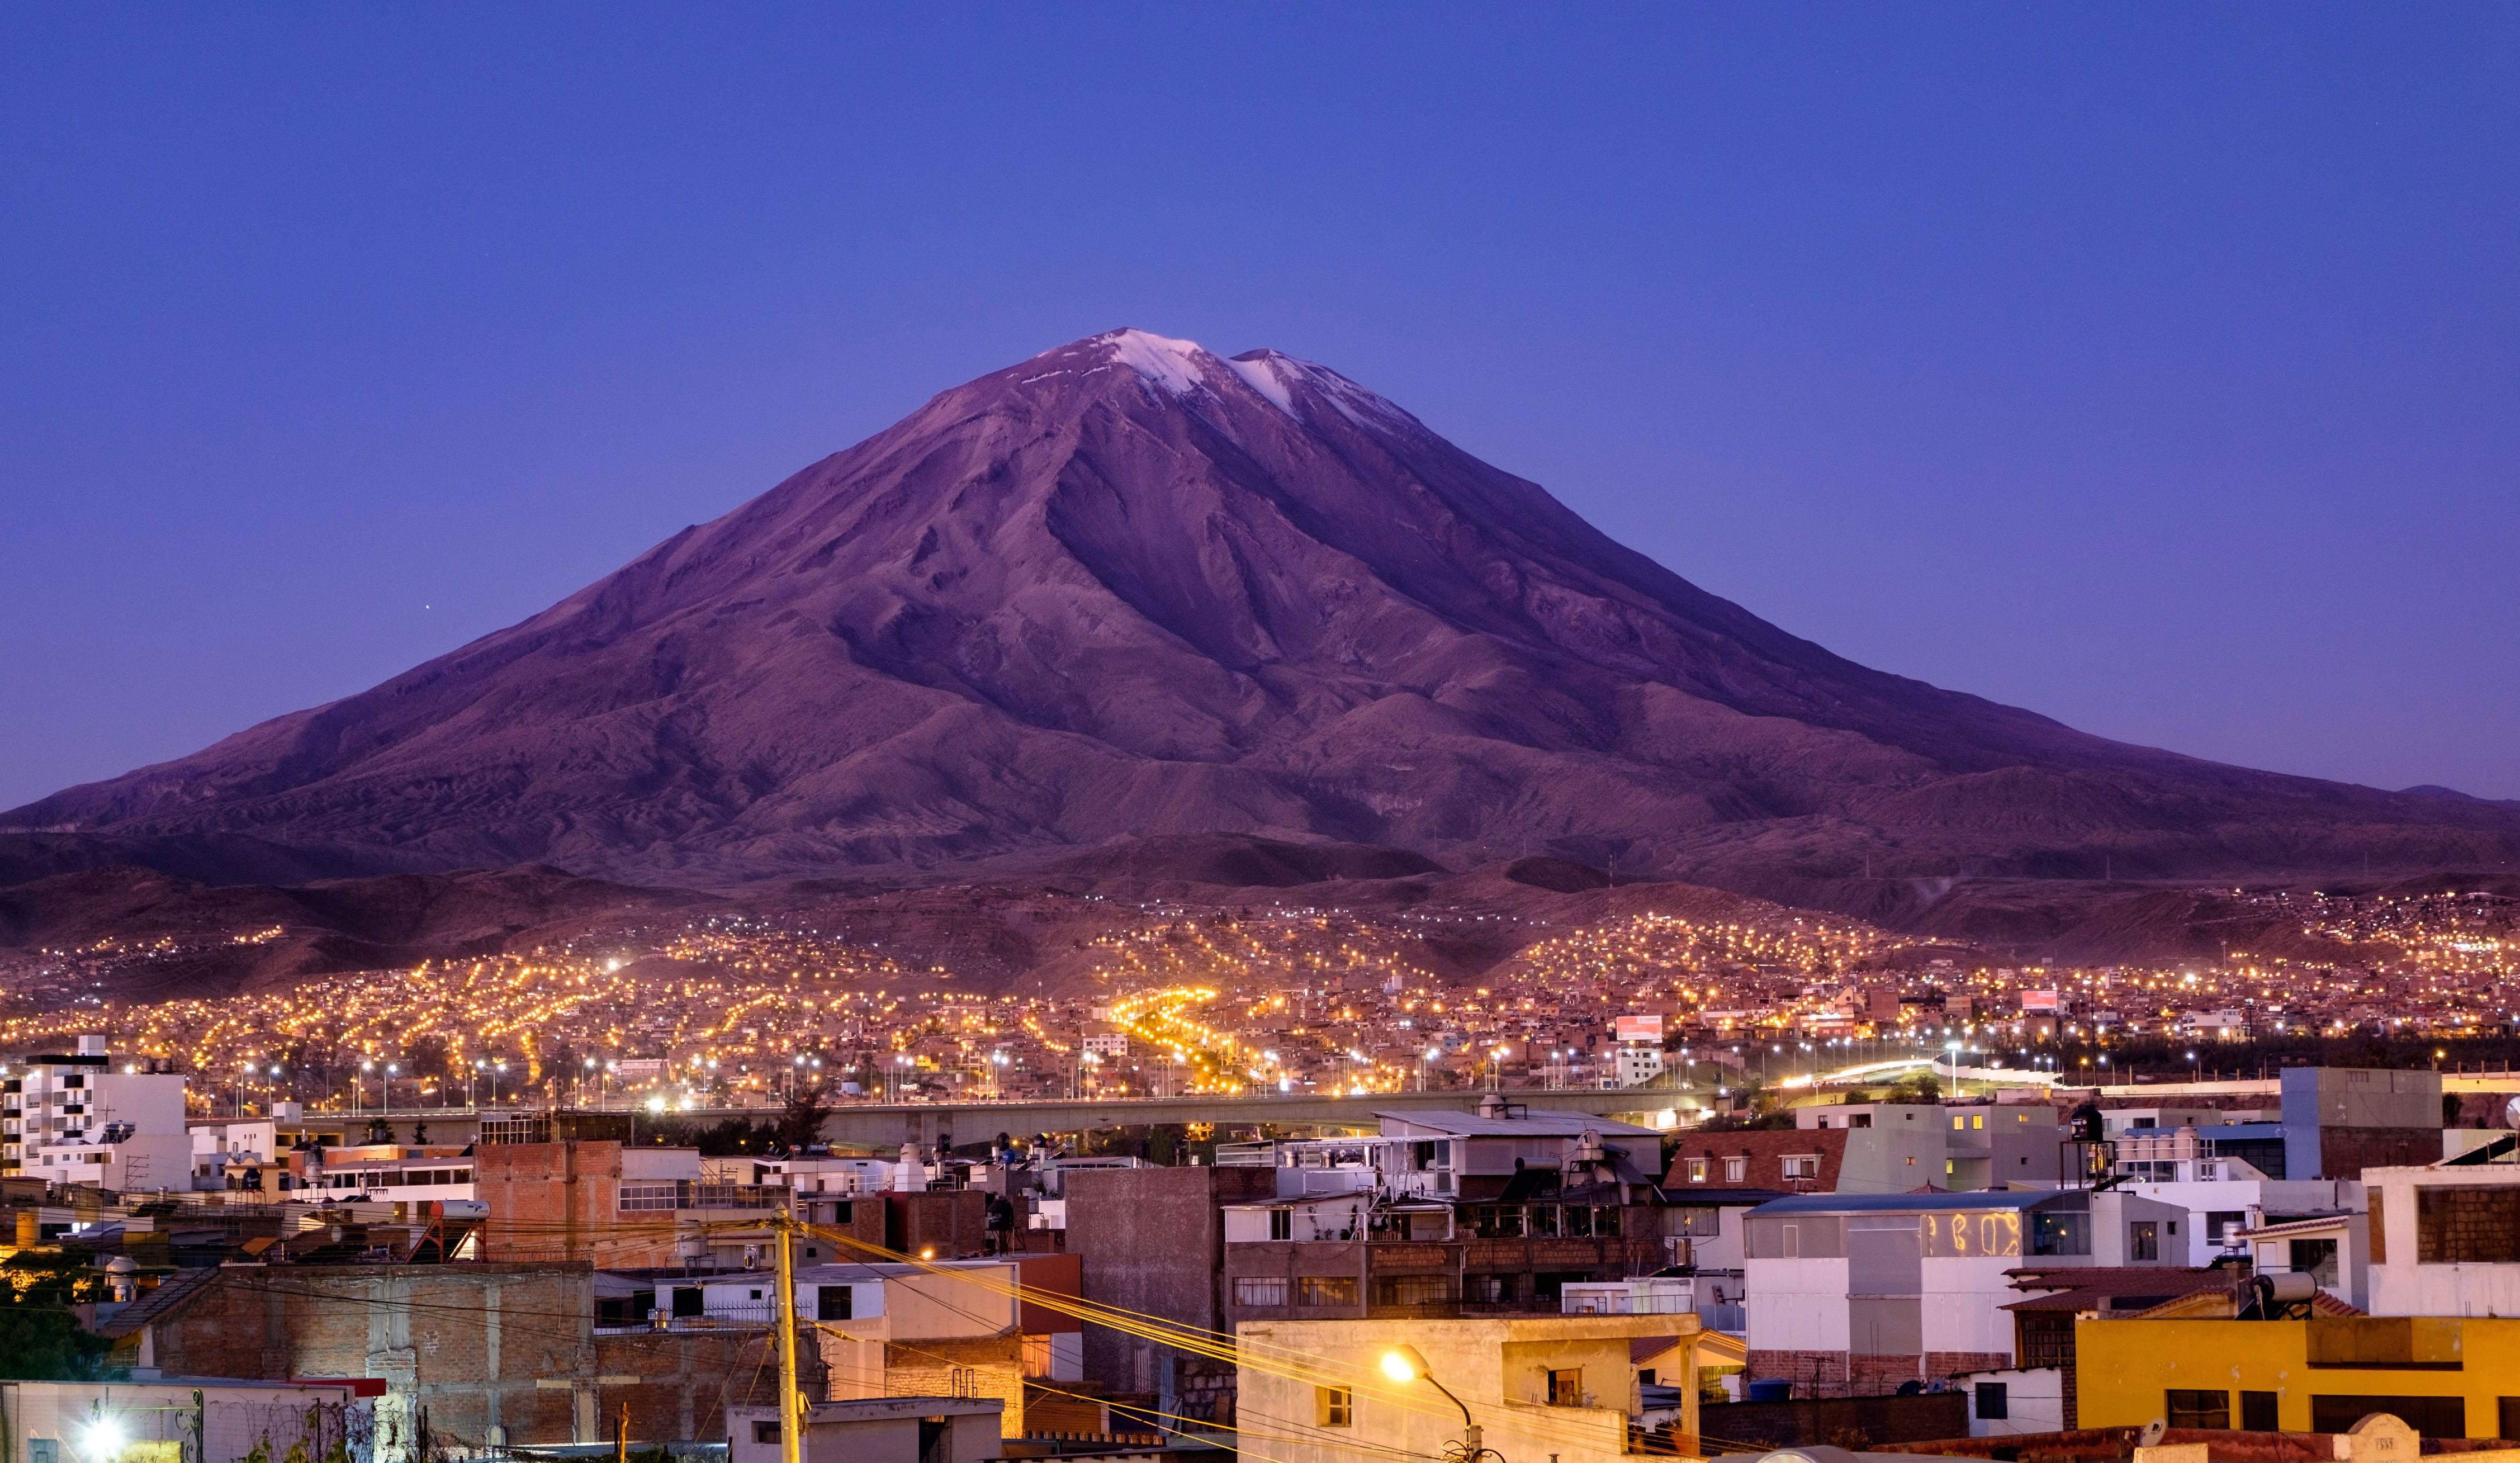 turista chileno muere tras caer al abismo de un volcán en perú: se precipitó 300 metros